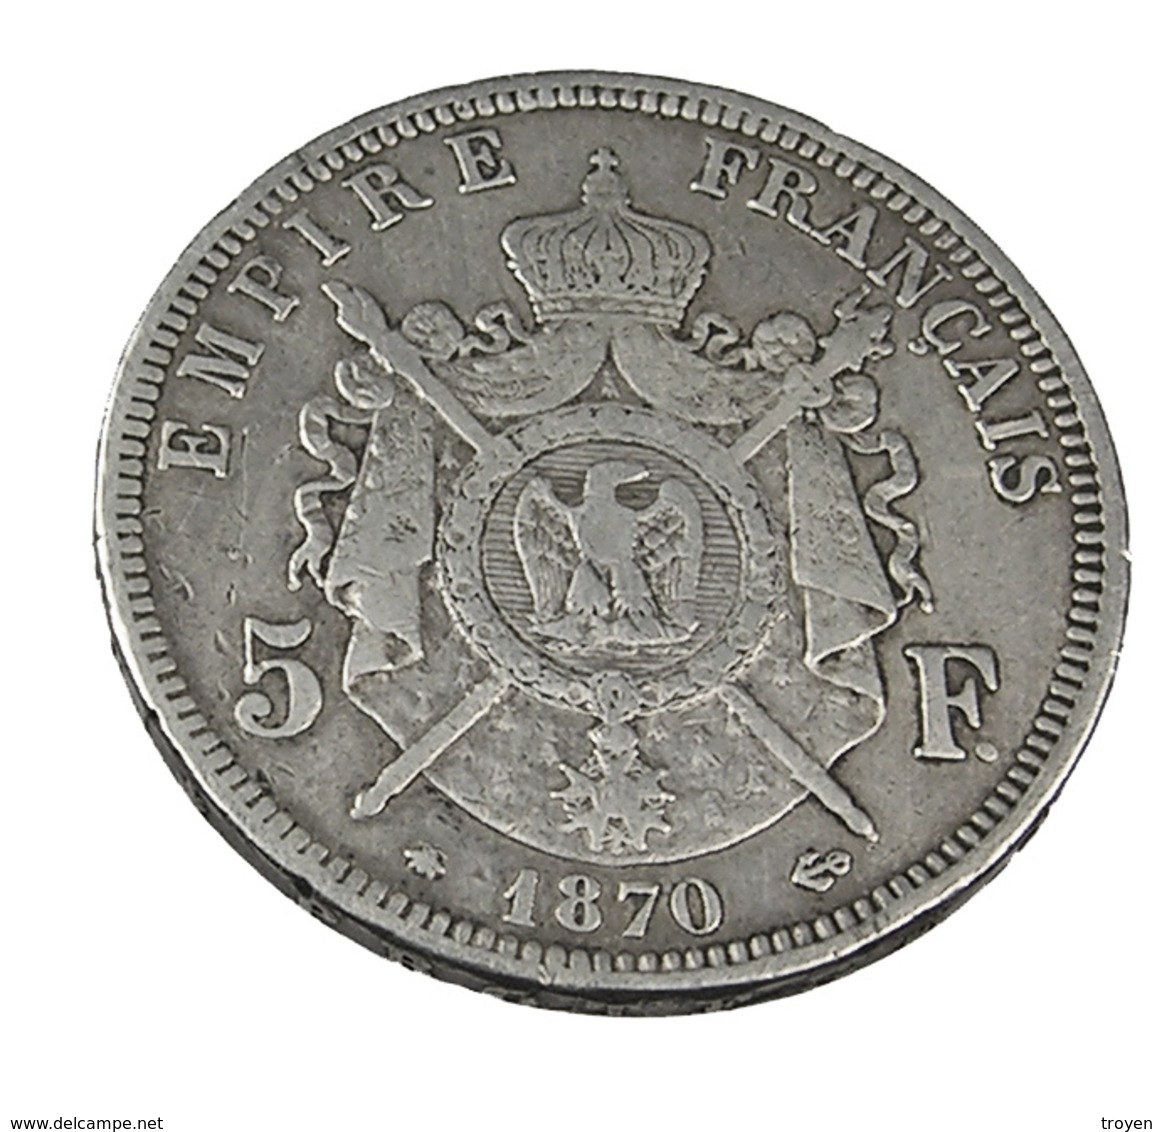 5 Francs - Napoléon III - France - 1870 A - Paris  -  Tête Laurée  - Argent - TB+ - - 5 Francs